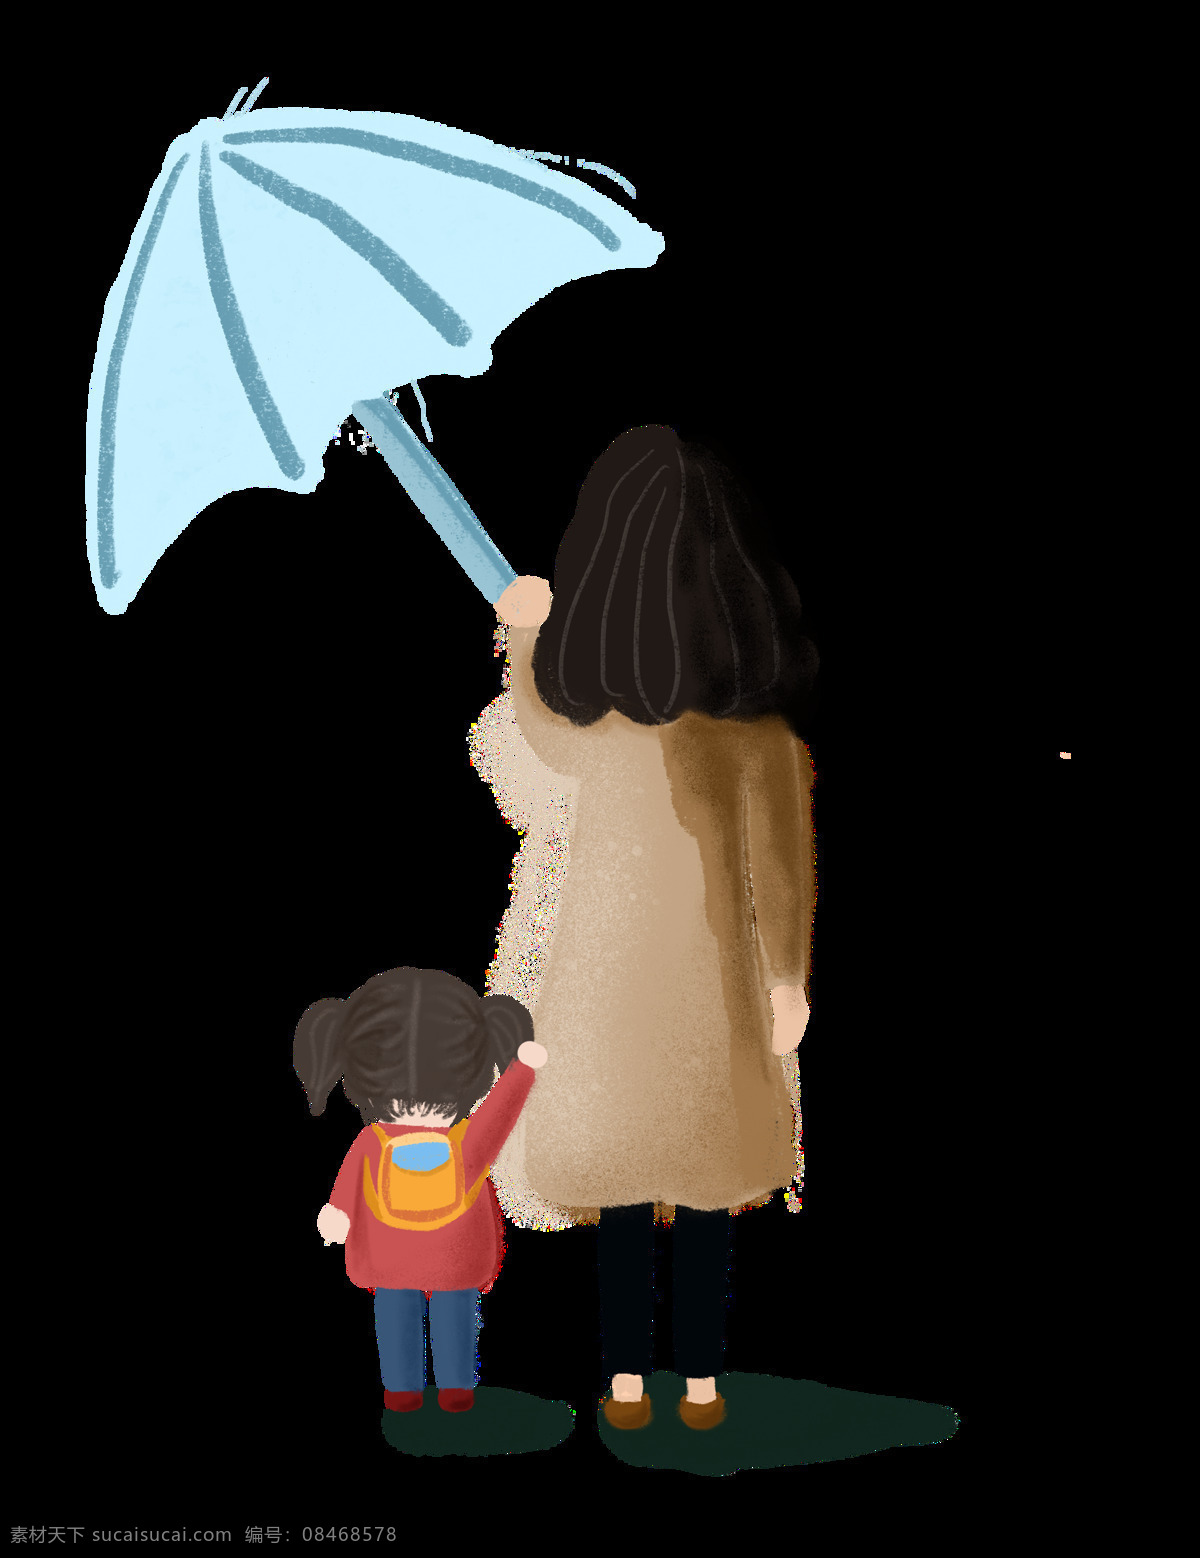 母亲节 雨 中 妈妈 孩子 免 扣 图 雨伞 手绘 插画 母婴 育儿 教育 幼儿园 学校 家庭 亲情 温暖 感恩